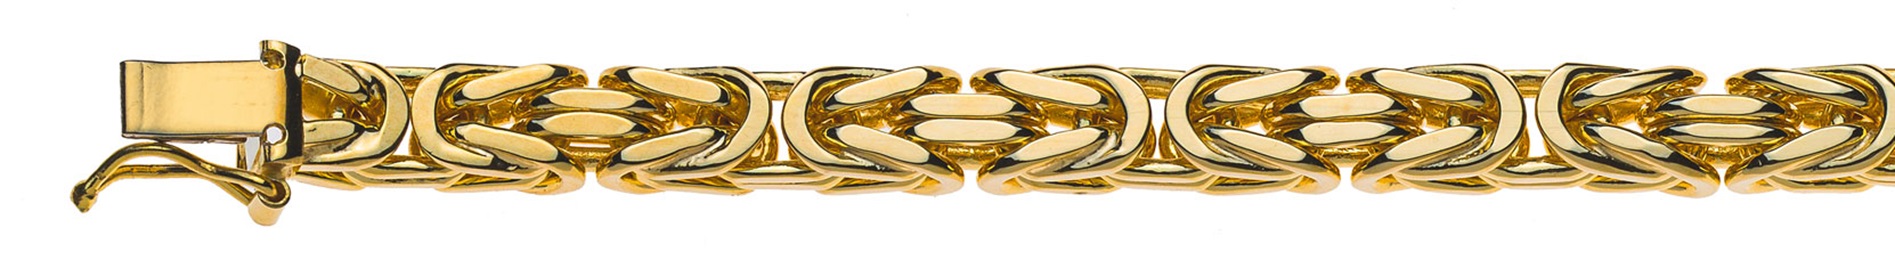 AURONOS Prestige Halskette Gelbgold 18K Königskette 55cm 5mm